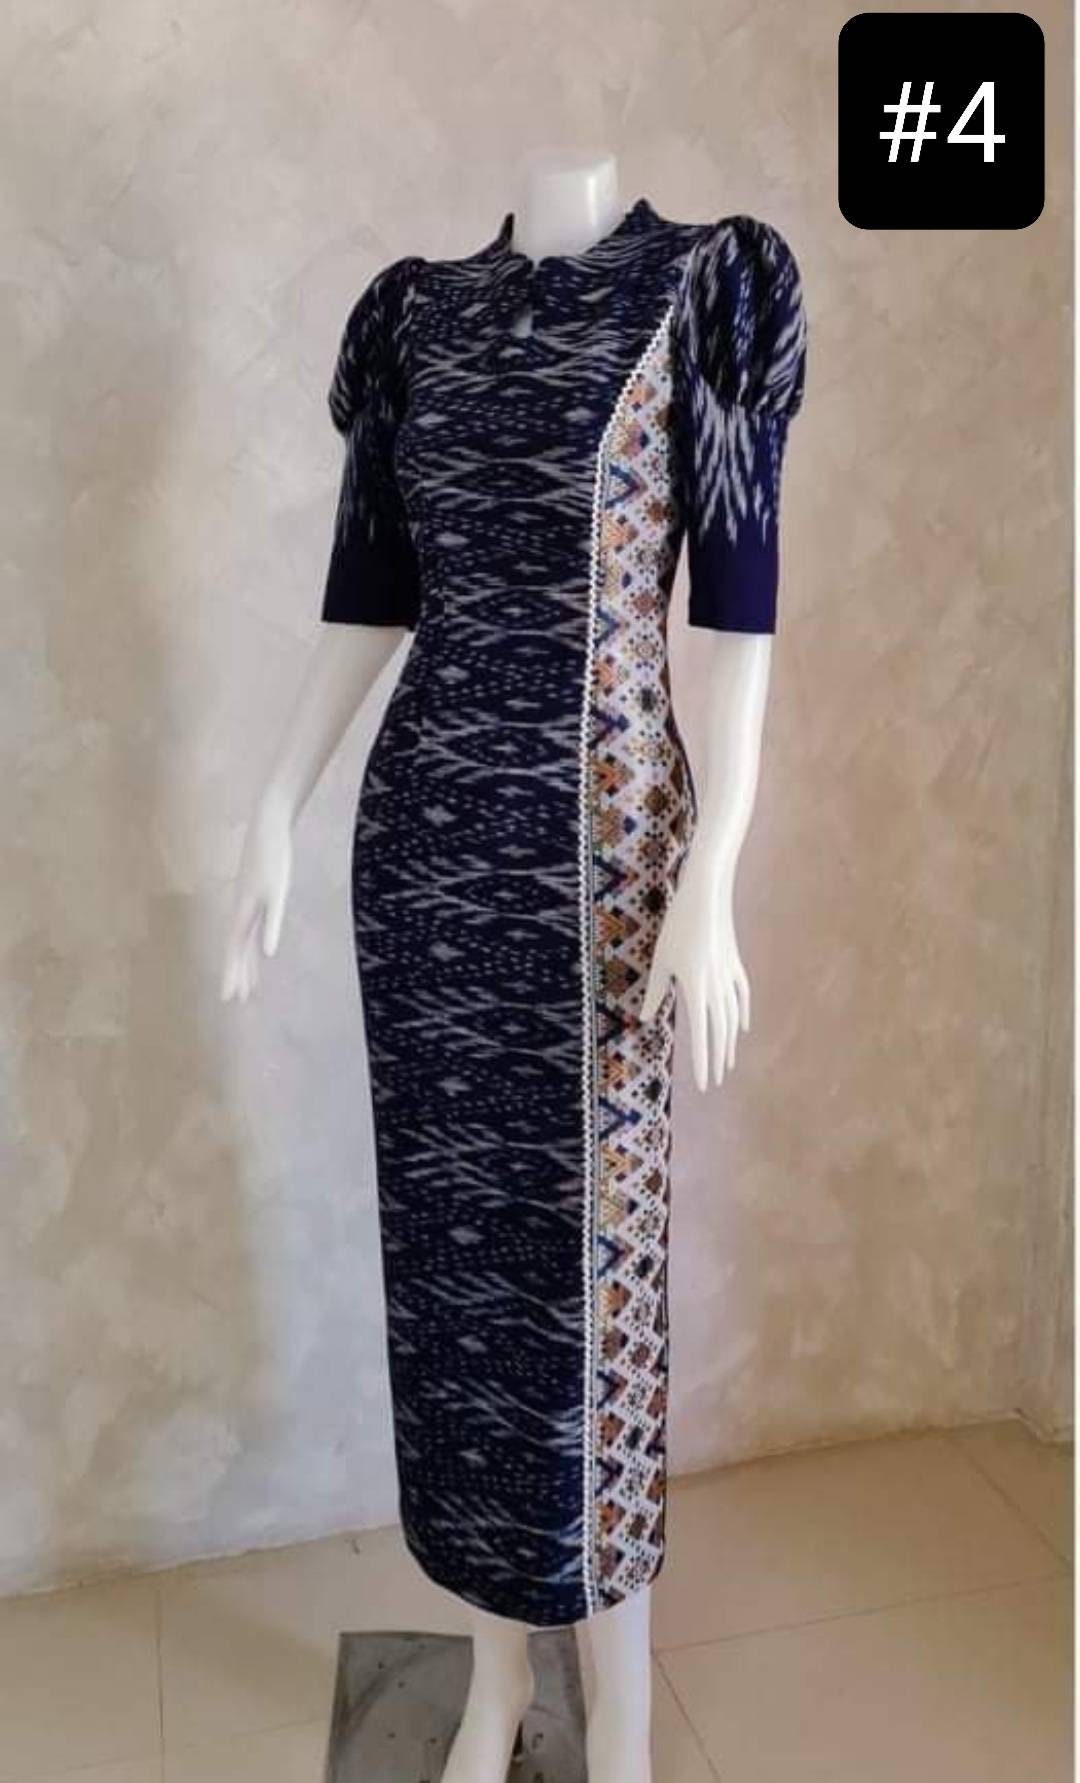 Gorgeous Thai Maxi Dress Hand Woven 100% Cotton Thai Dress | Etsy